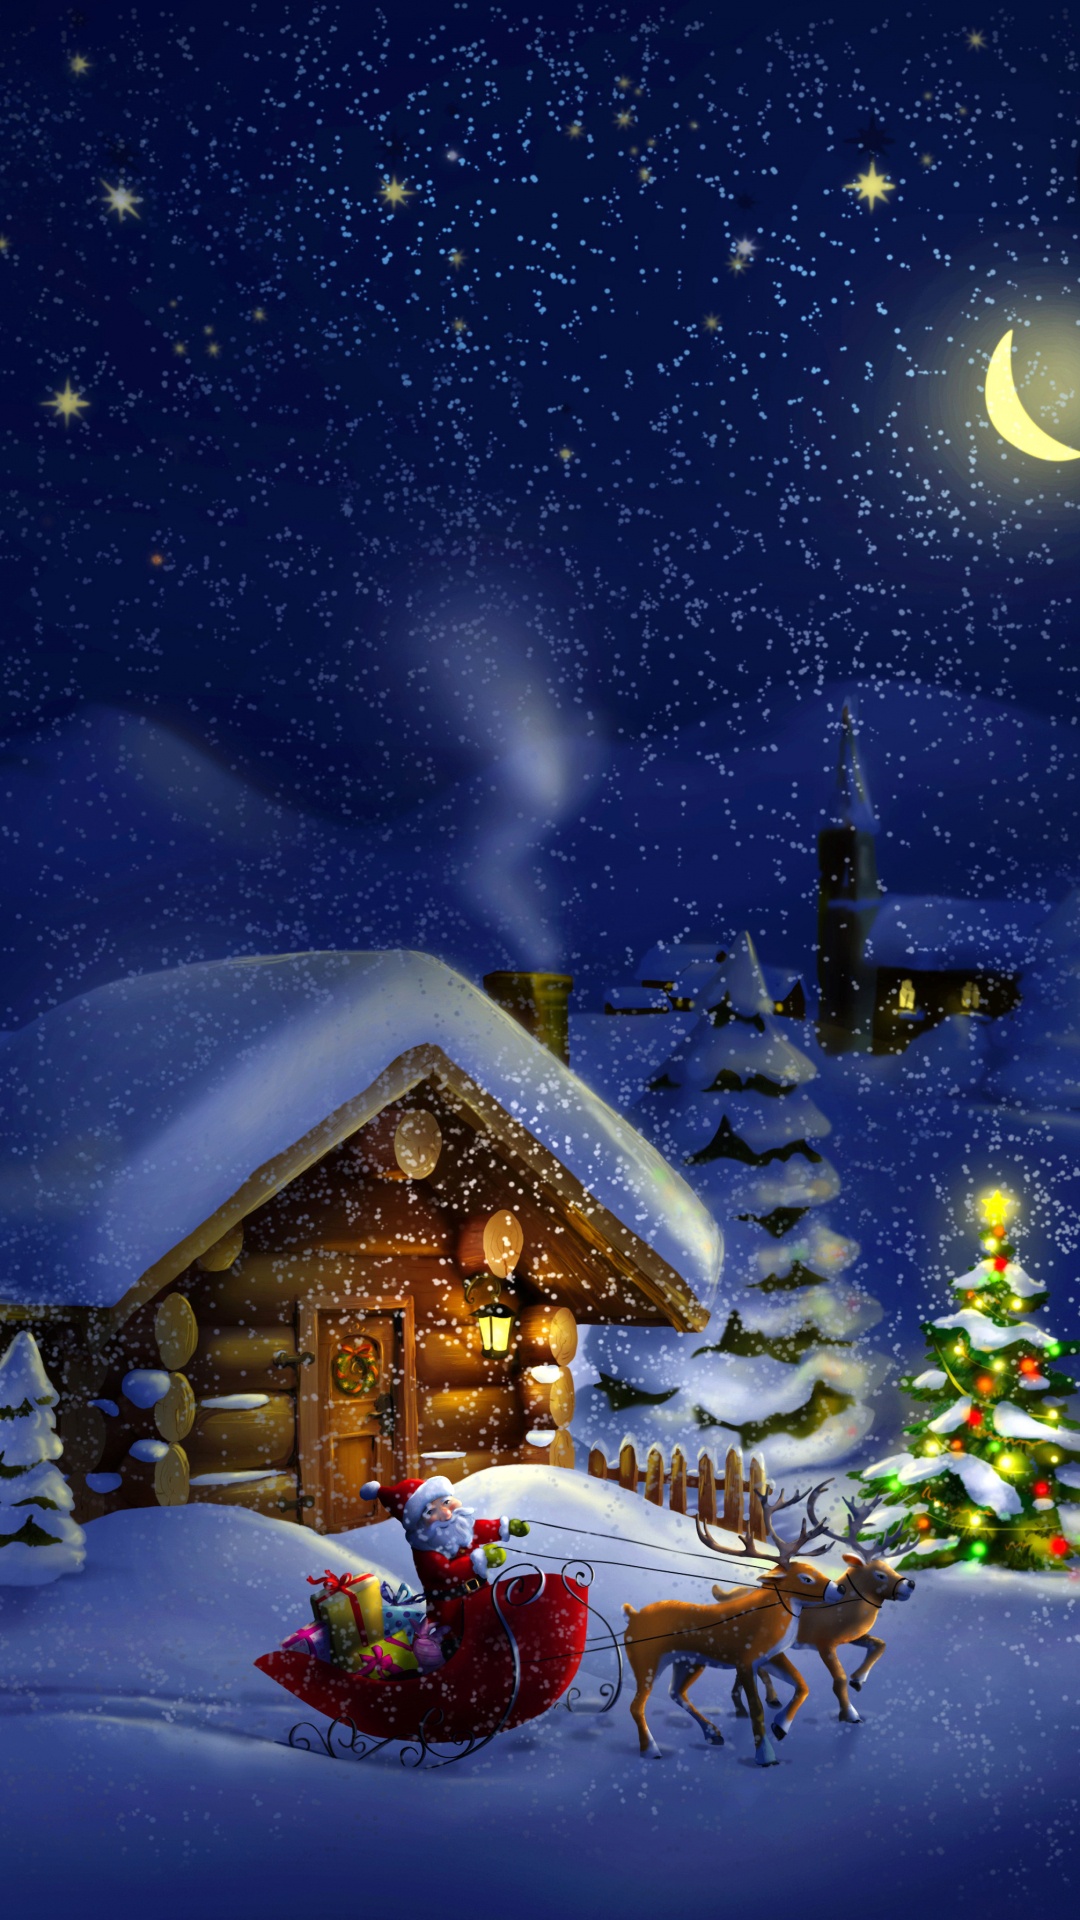 El Día De Navidad, Santa Claus, Invierno, Nieve, Navidad. Wallpaper in 1080x1920 Resolution